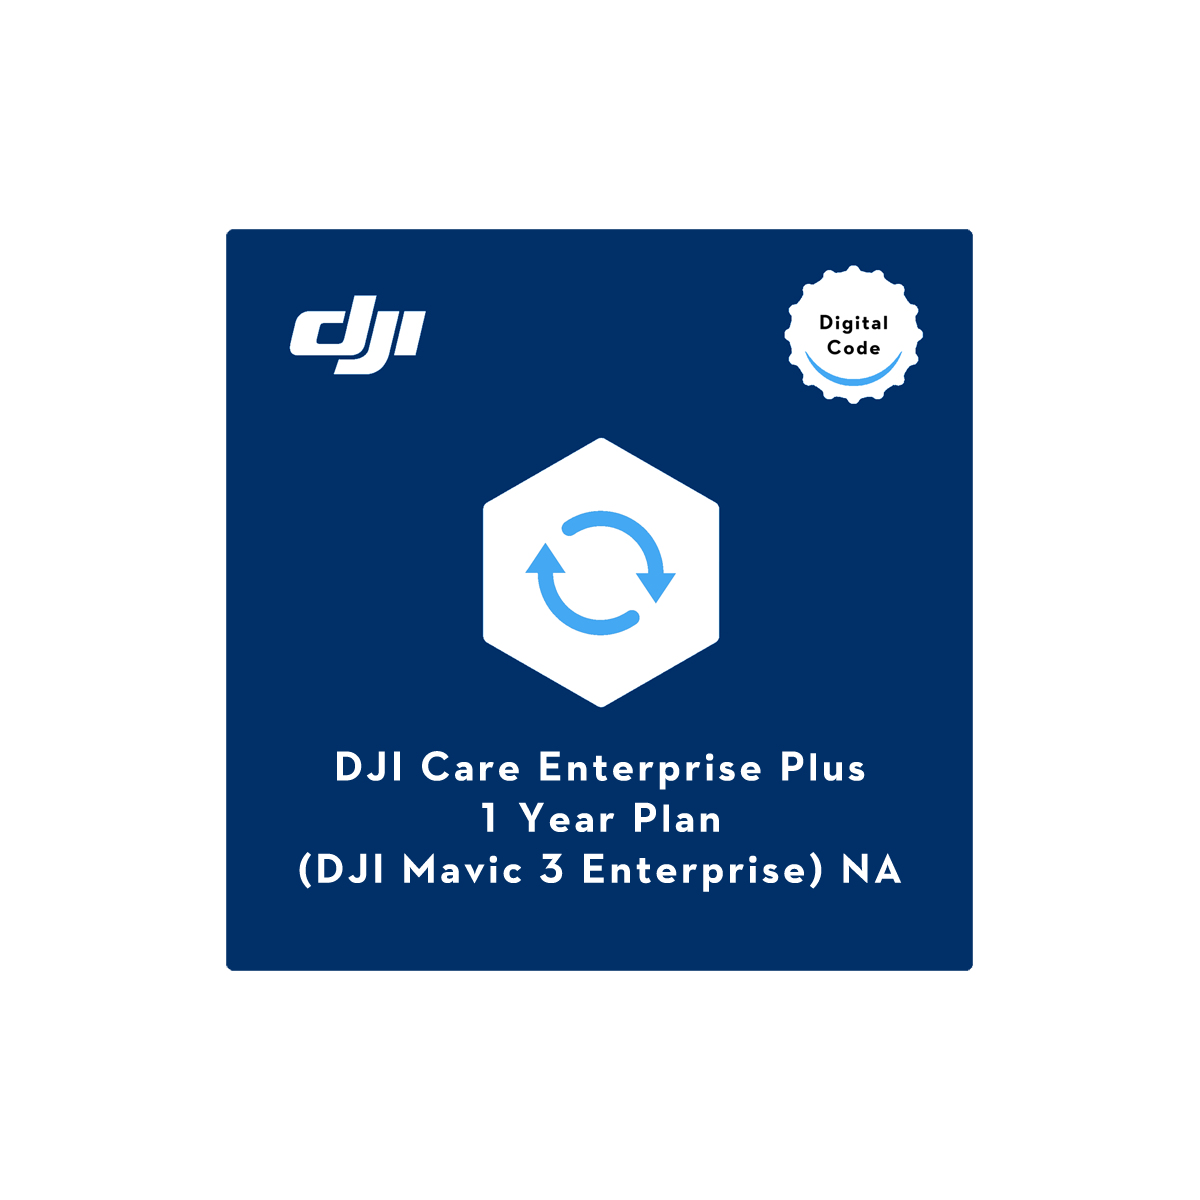 DJI Care Enterprise Plus (Mavic 3 Enterprise) NA